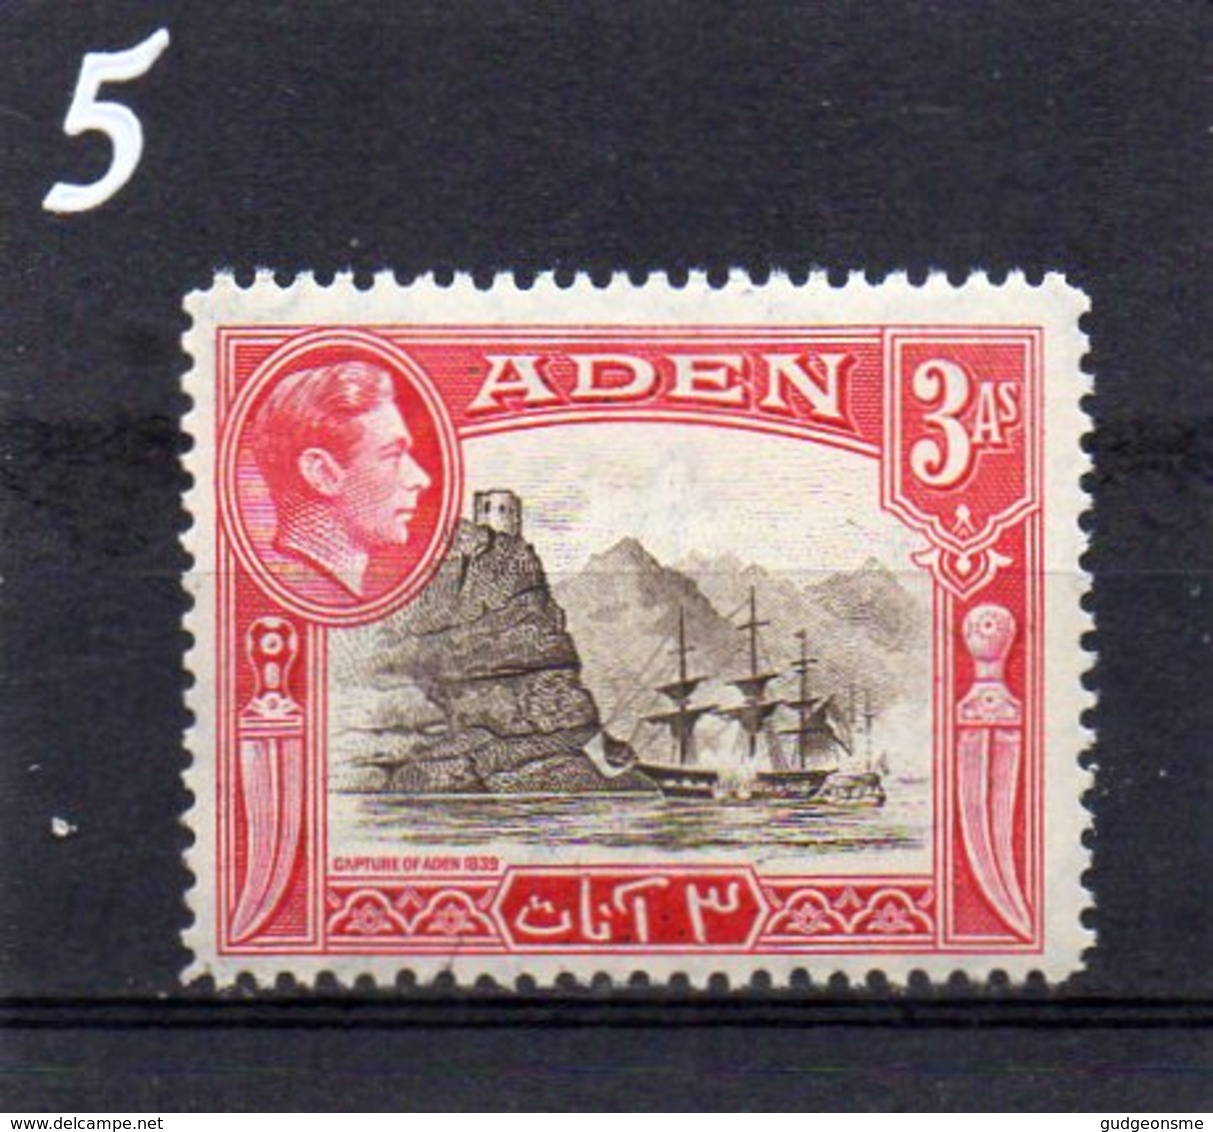 ADEN 1939 GV1 3A MNH - Aden (1854-1963)